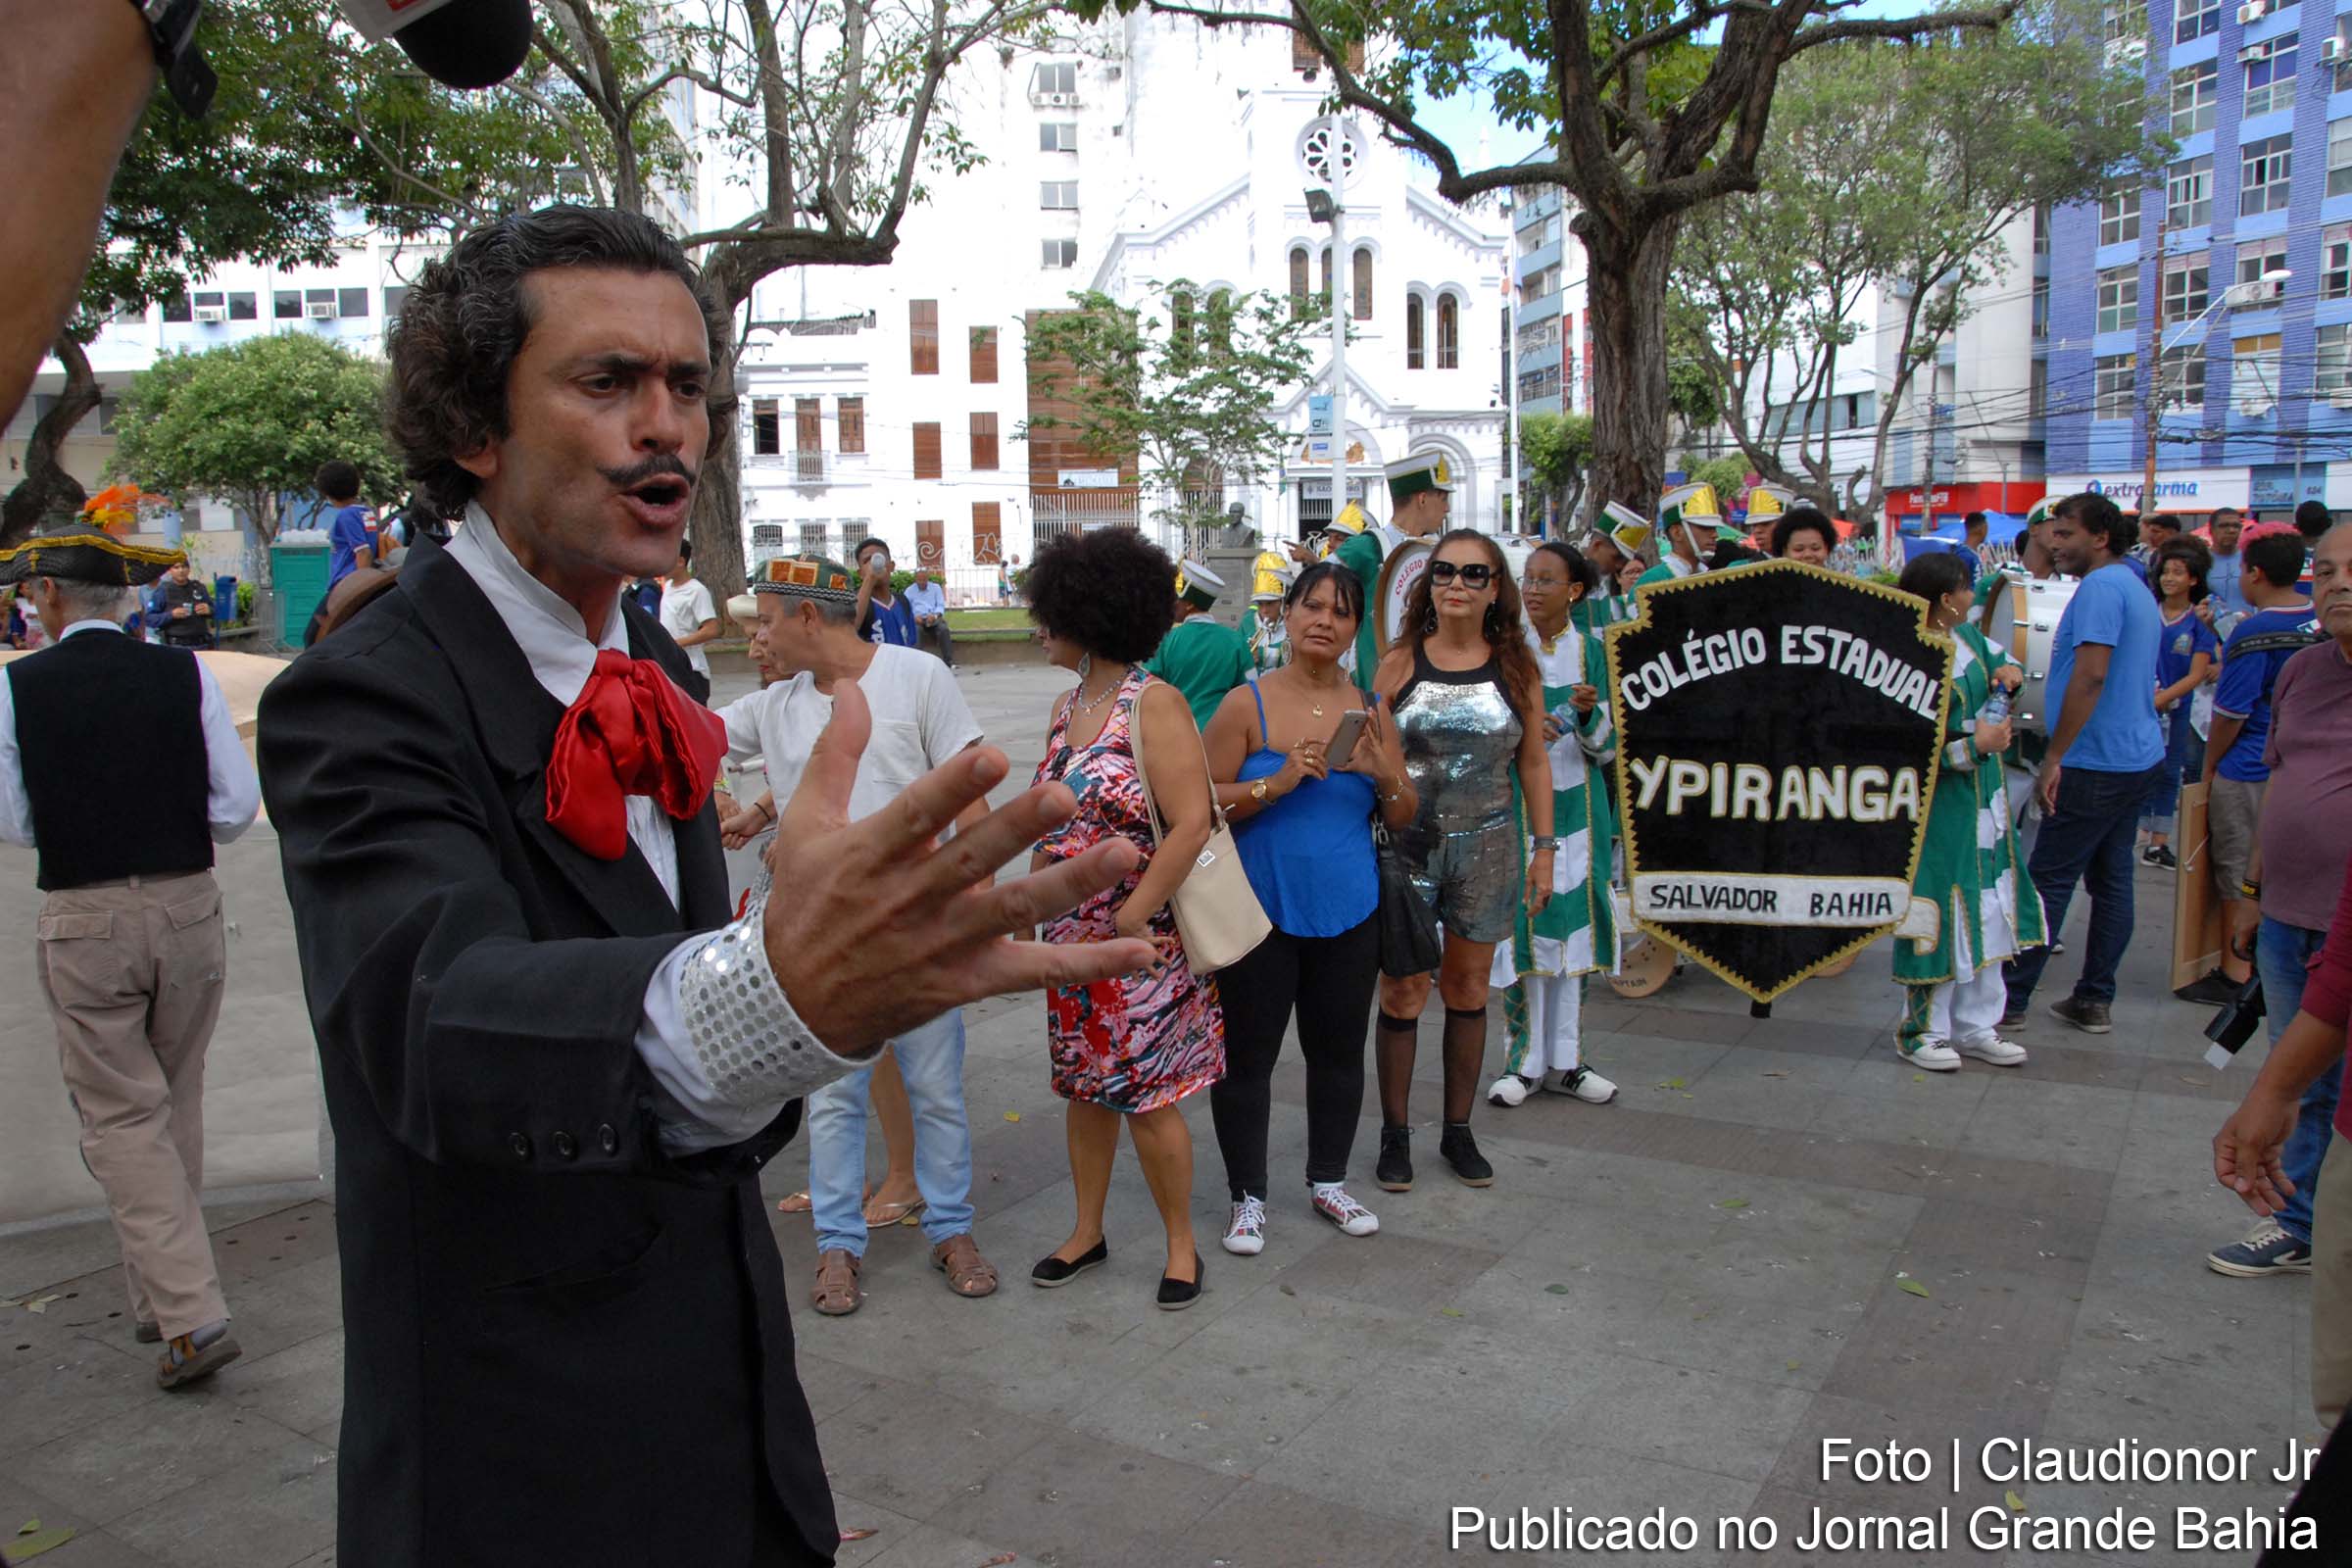 Dia da Poesia promovido na Praça da Piedade para alunos do Colégio Estadual Ypiranga.